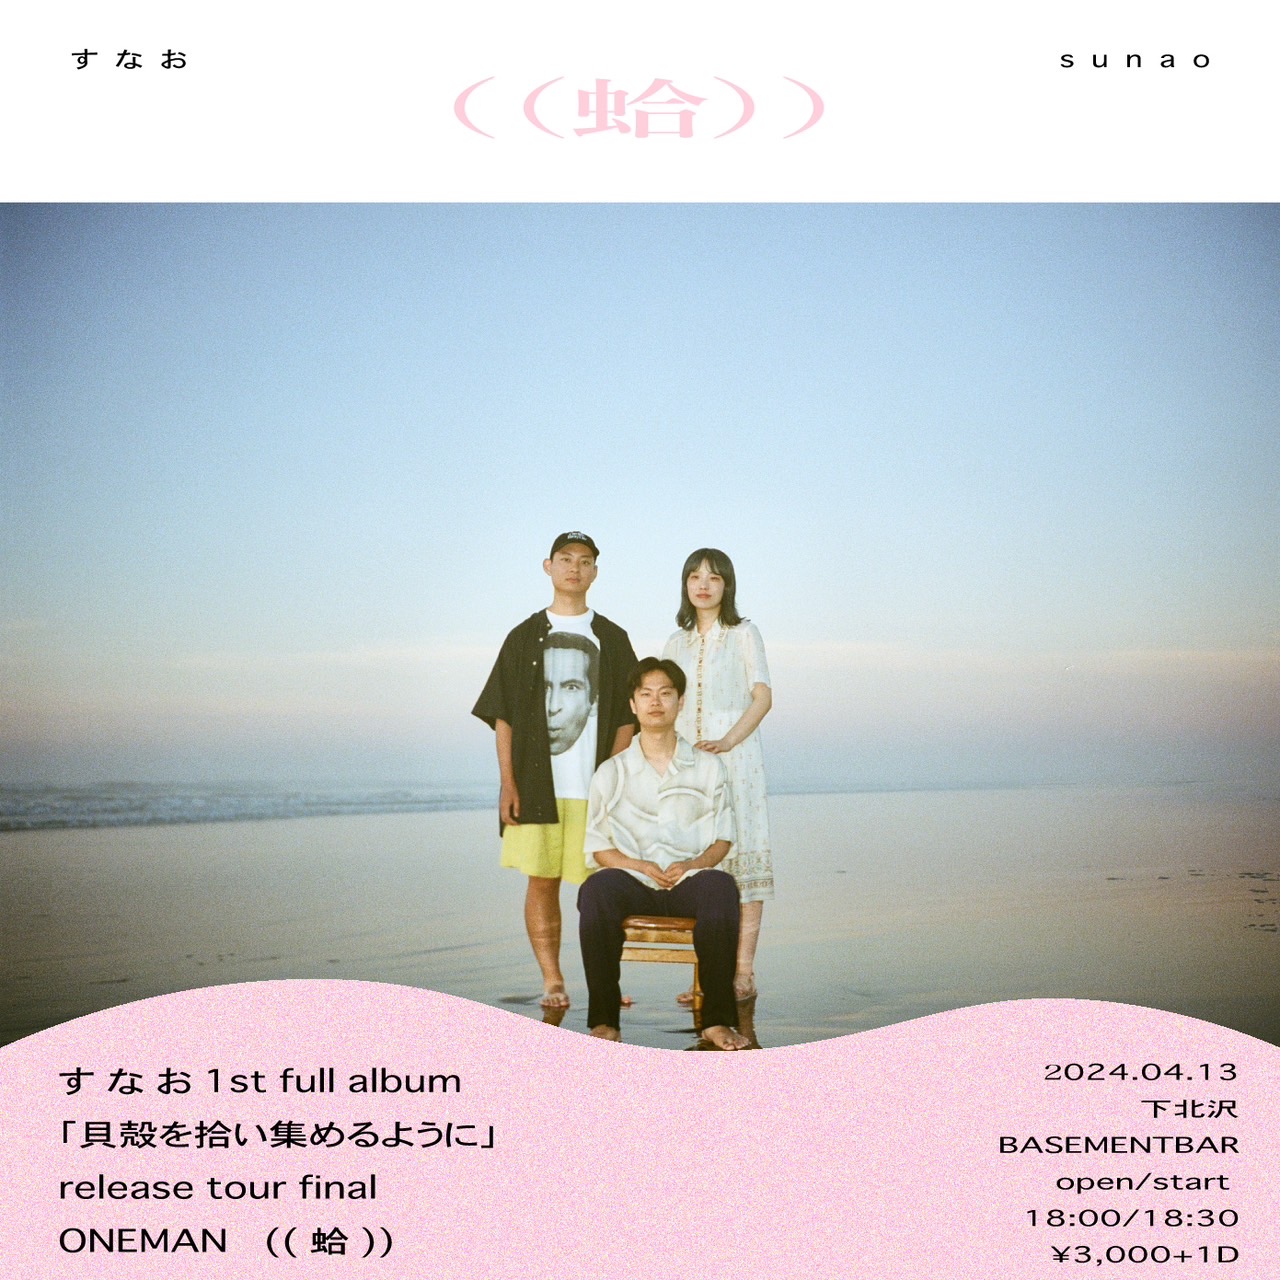 すなお1st full album「貝殻を拾い集めるように」release tour final ONEMAN "蛤"